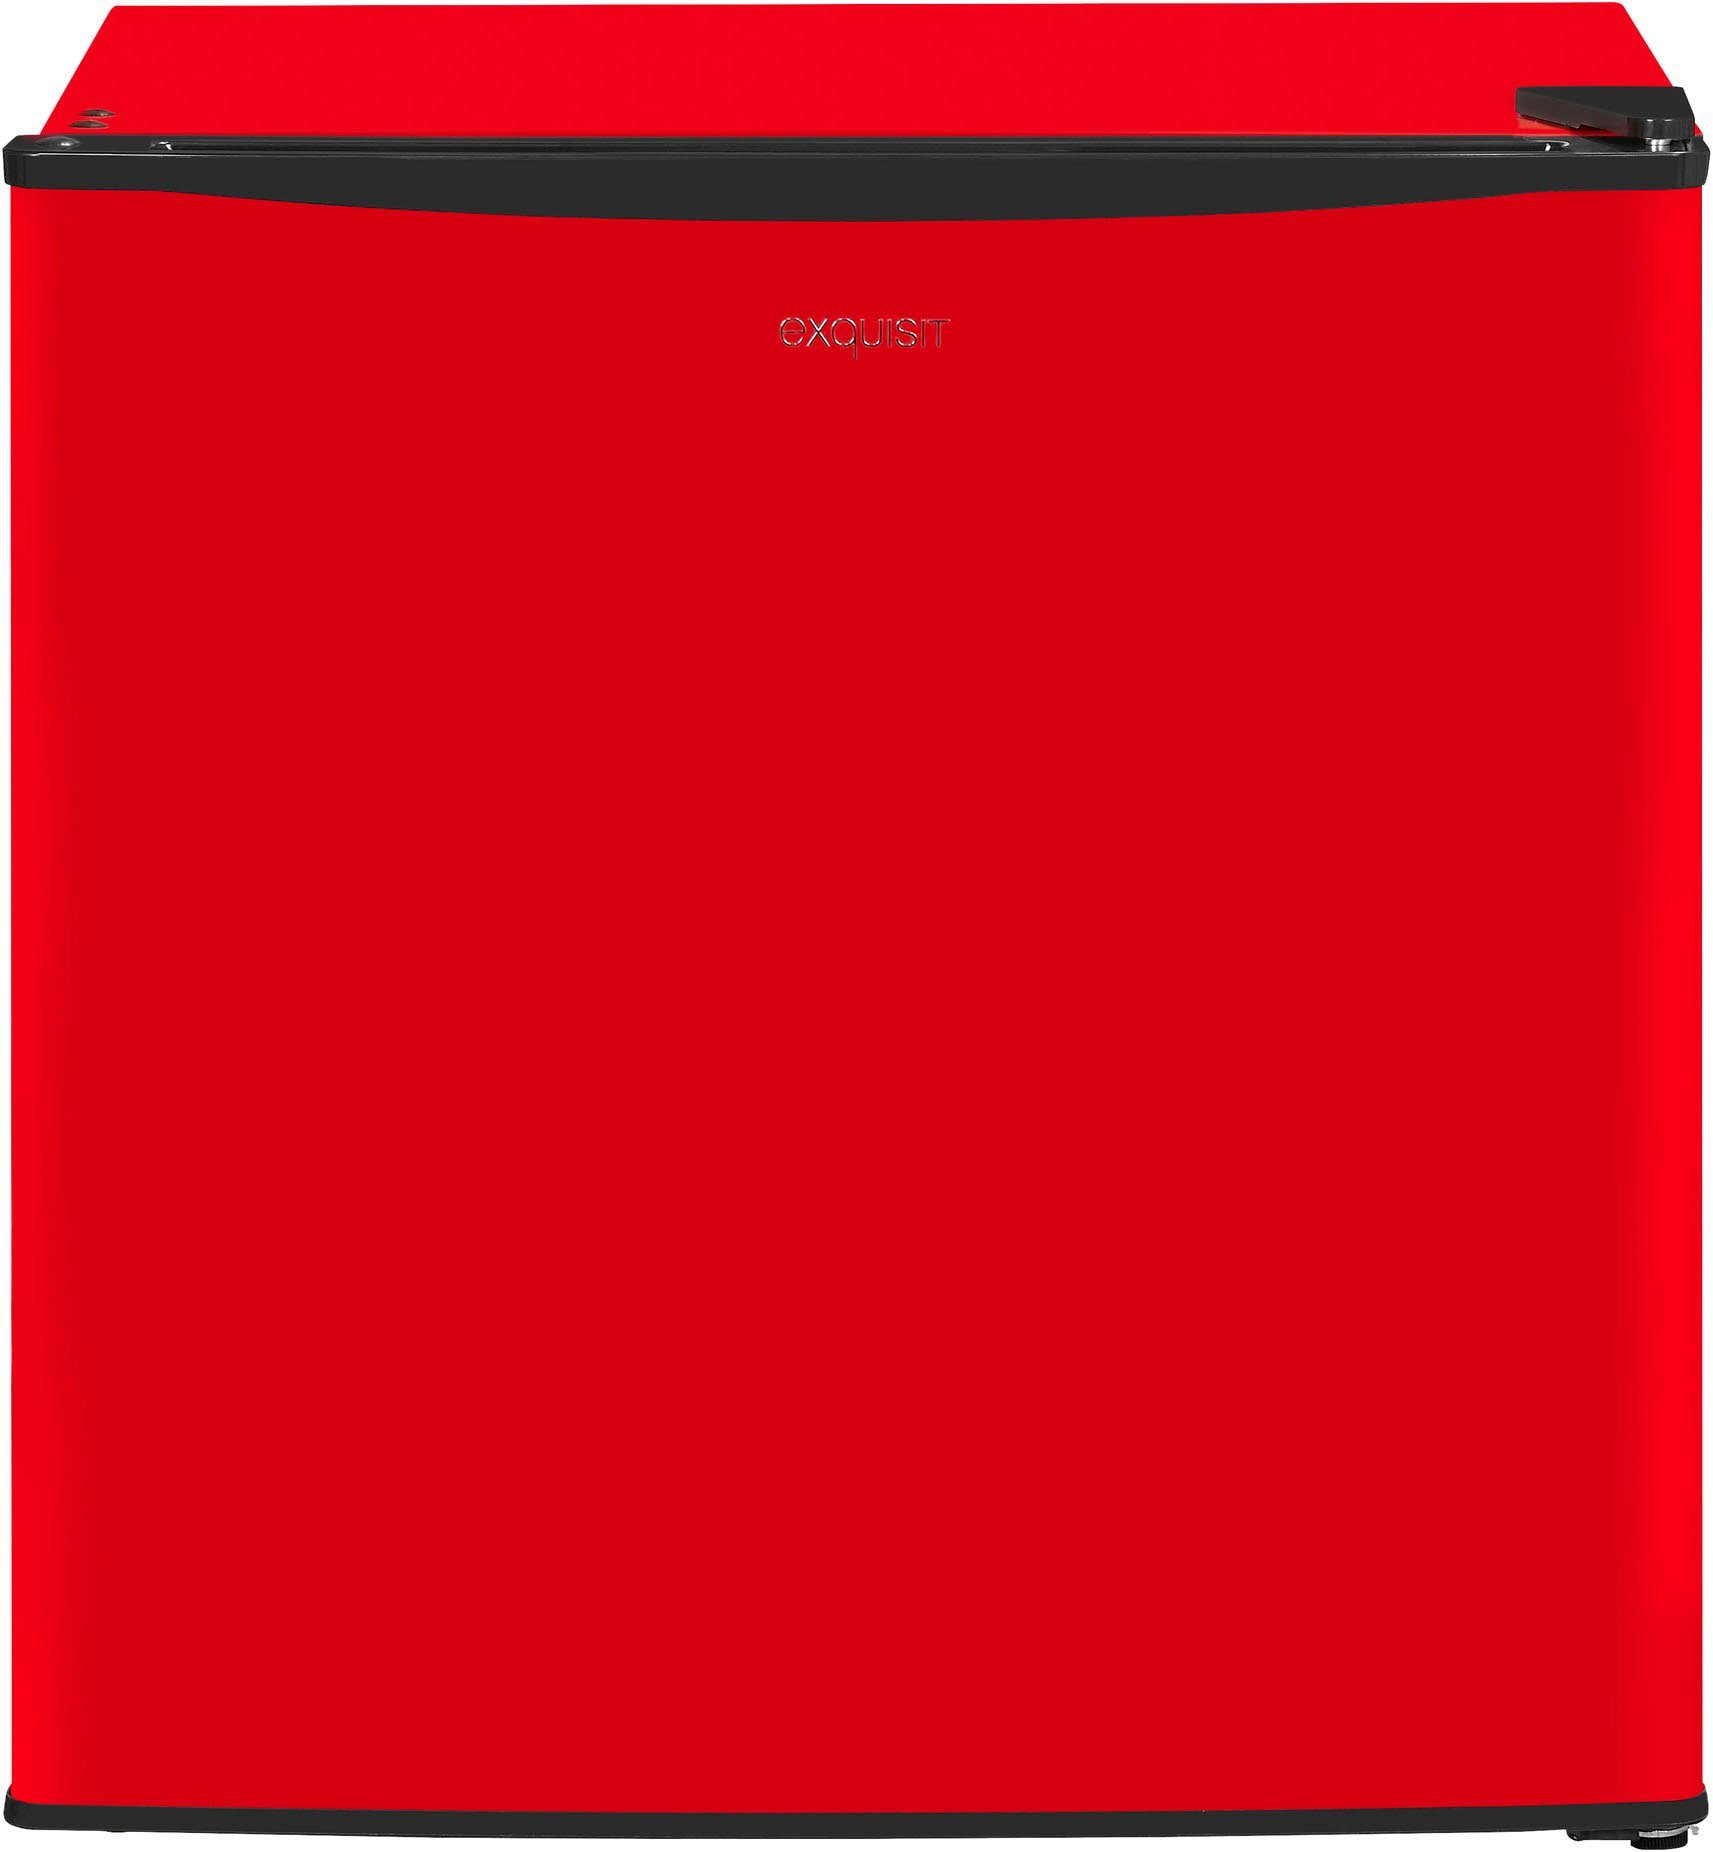 47 exquisit Gefrierschrank rot, cm GB40-150E 51 hoch, cm breit